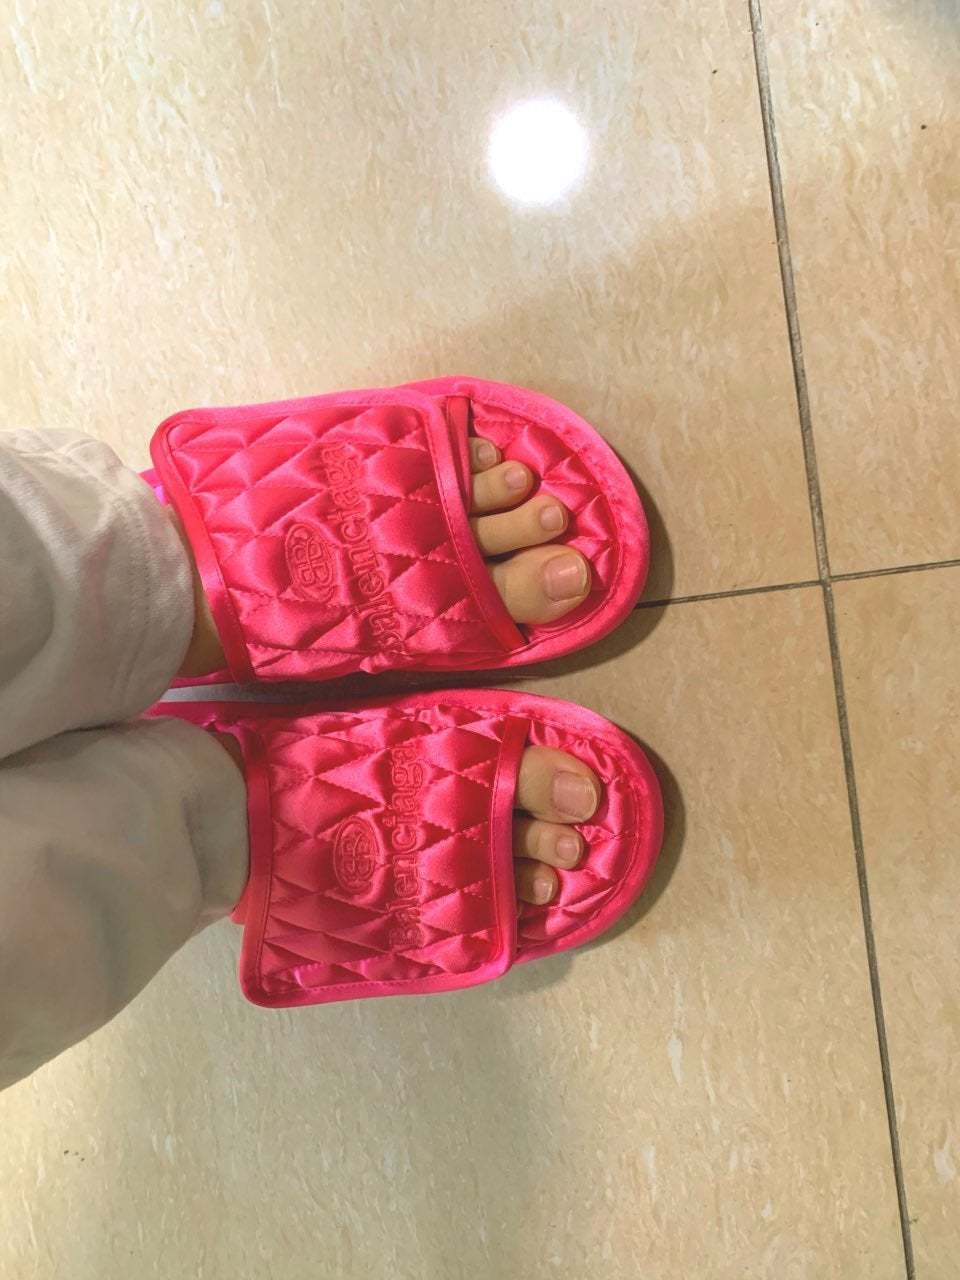 Momo Hirai Feet